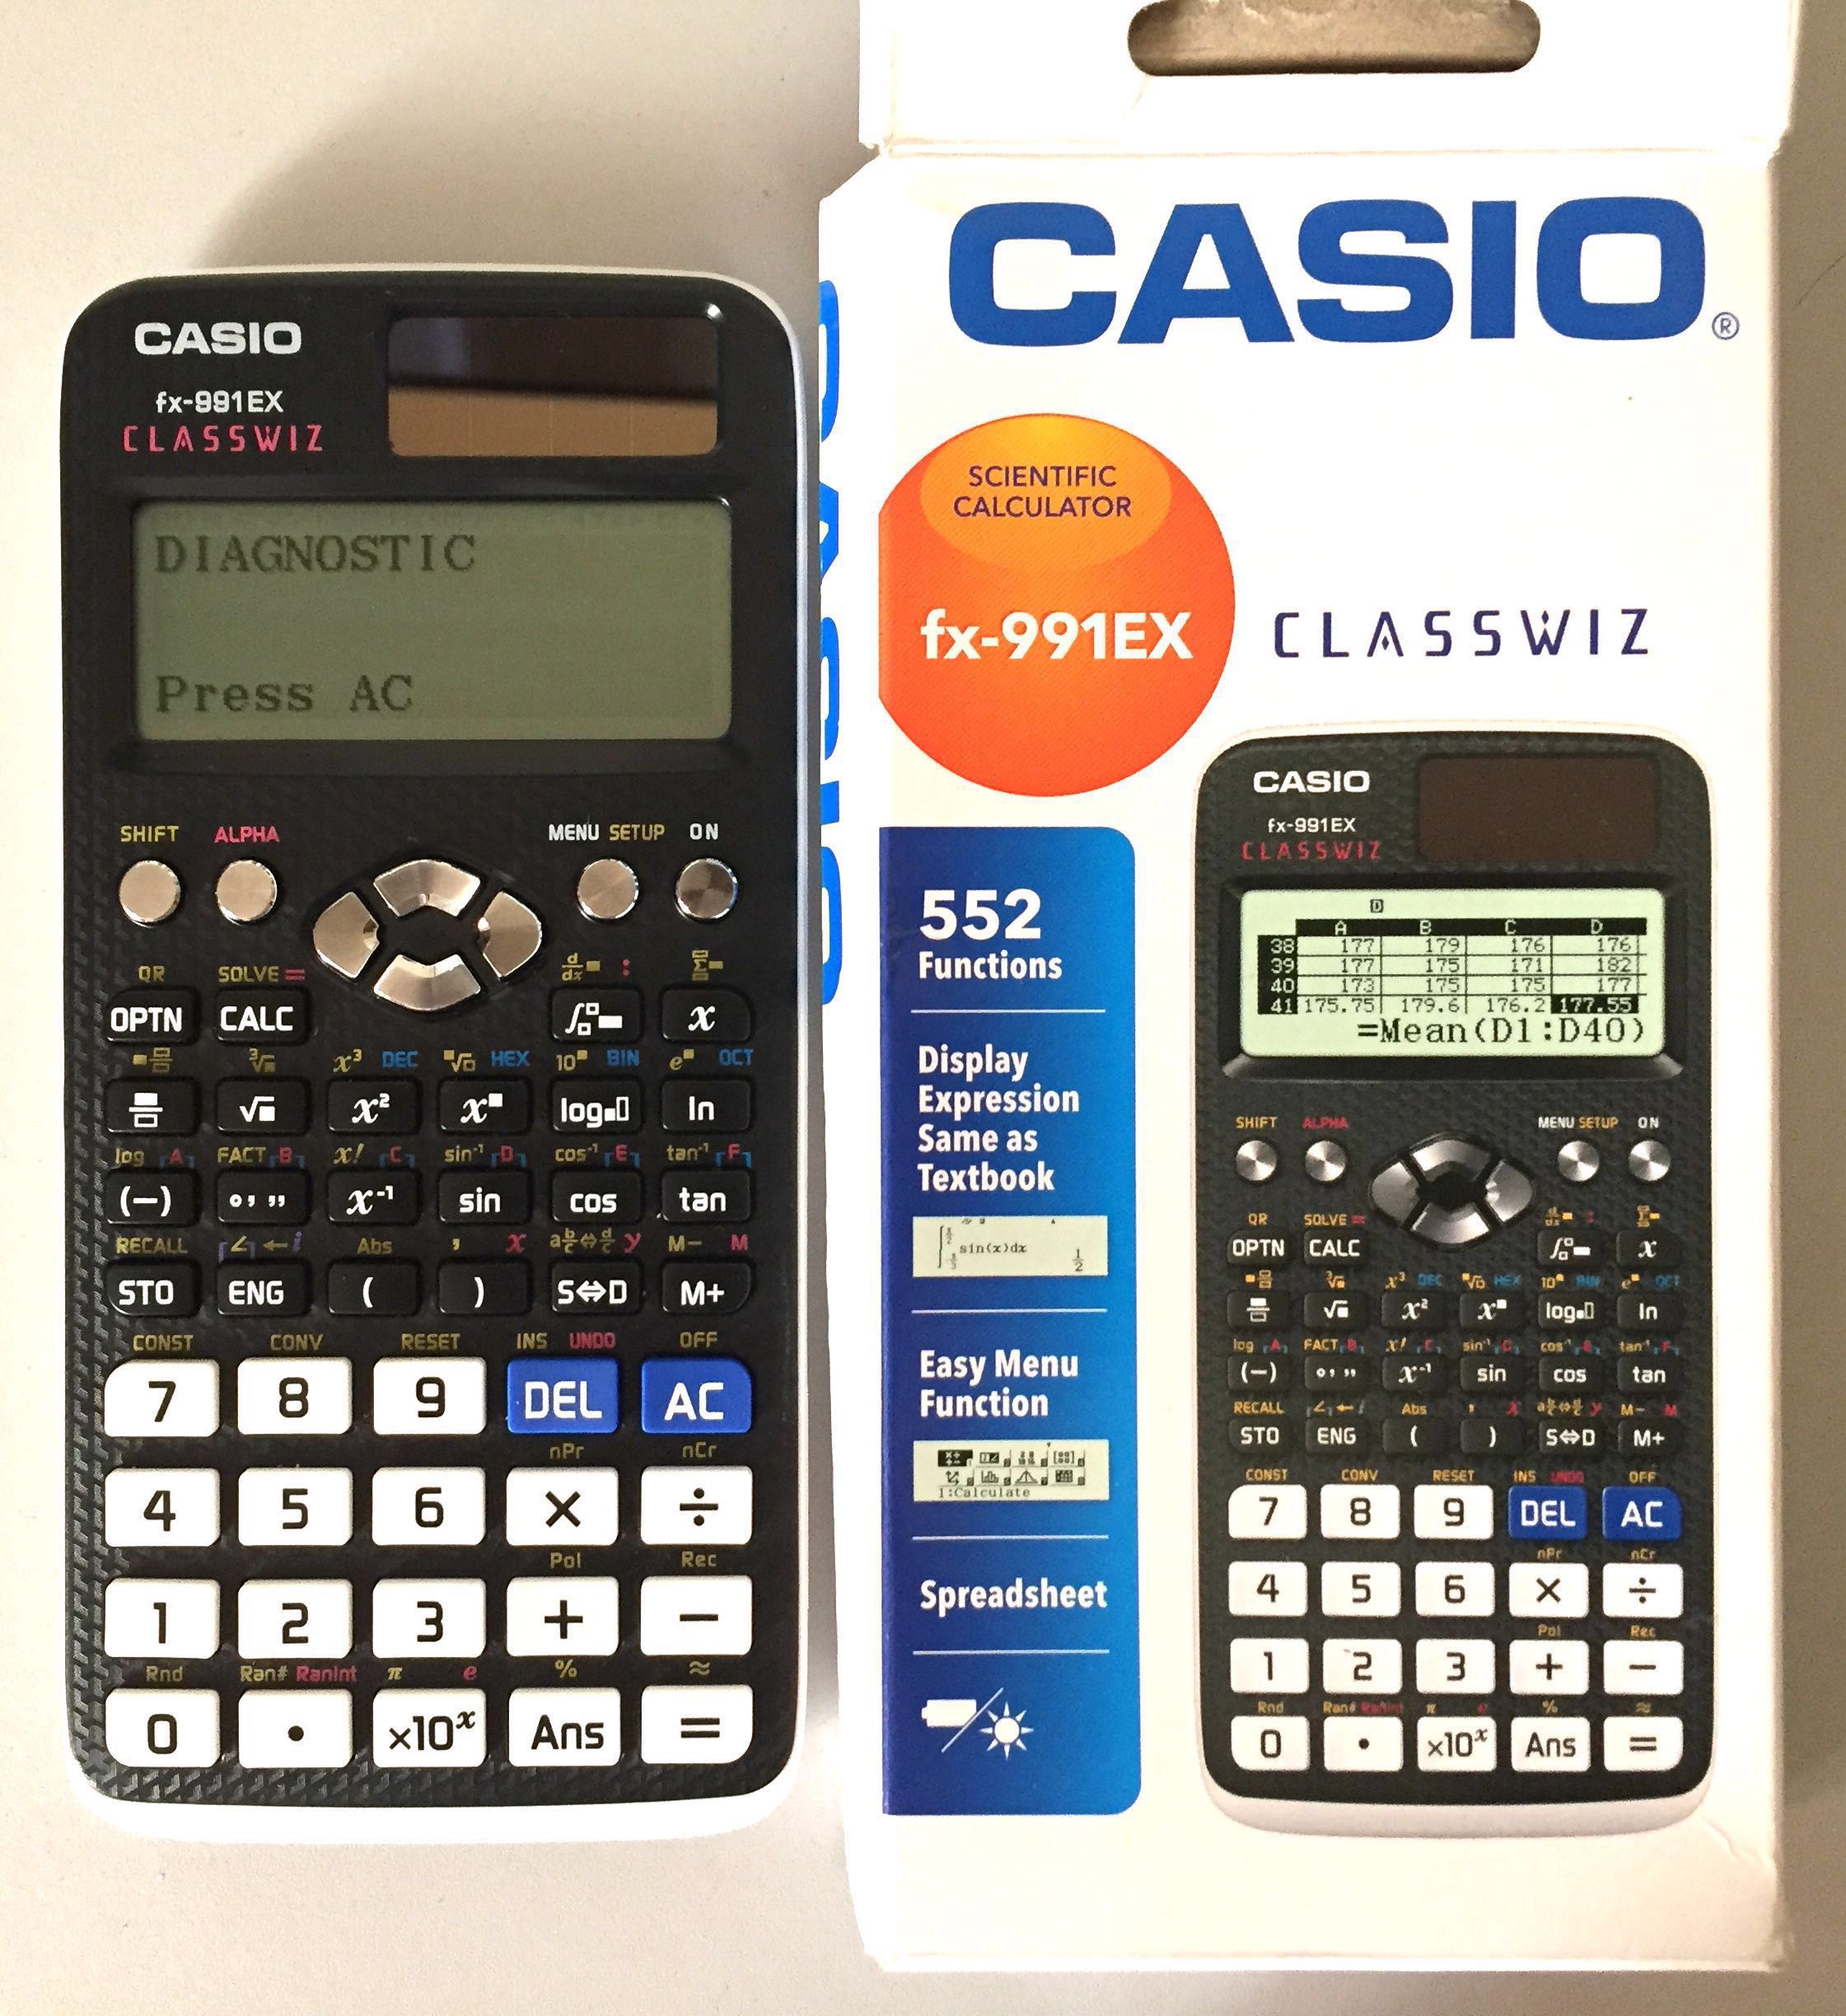 CASIO Scientific Calculator FX-991ex Classwiz Original ...